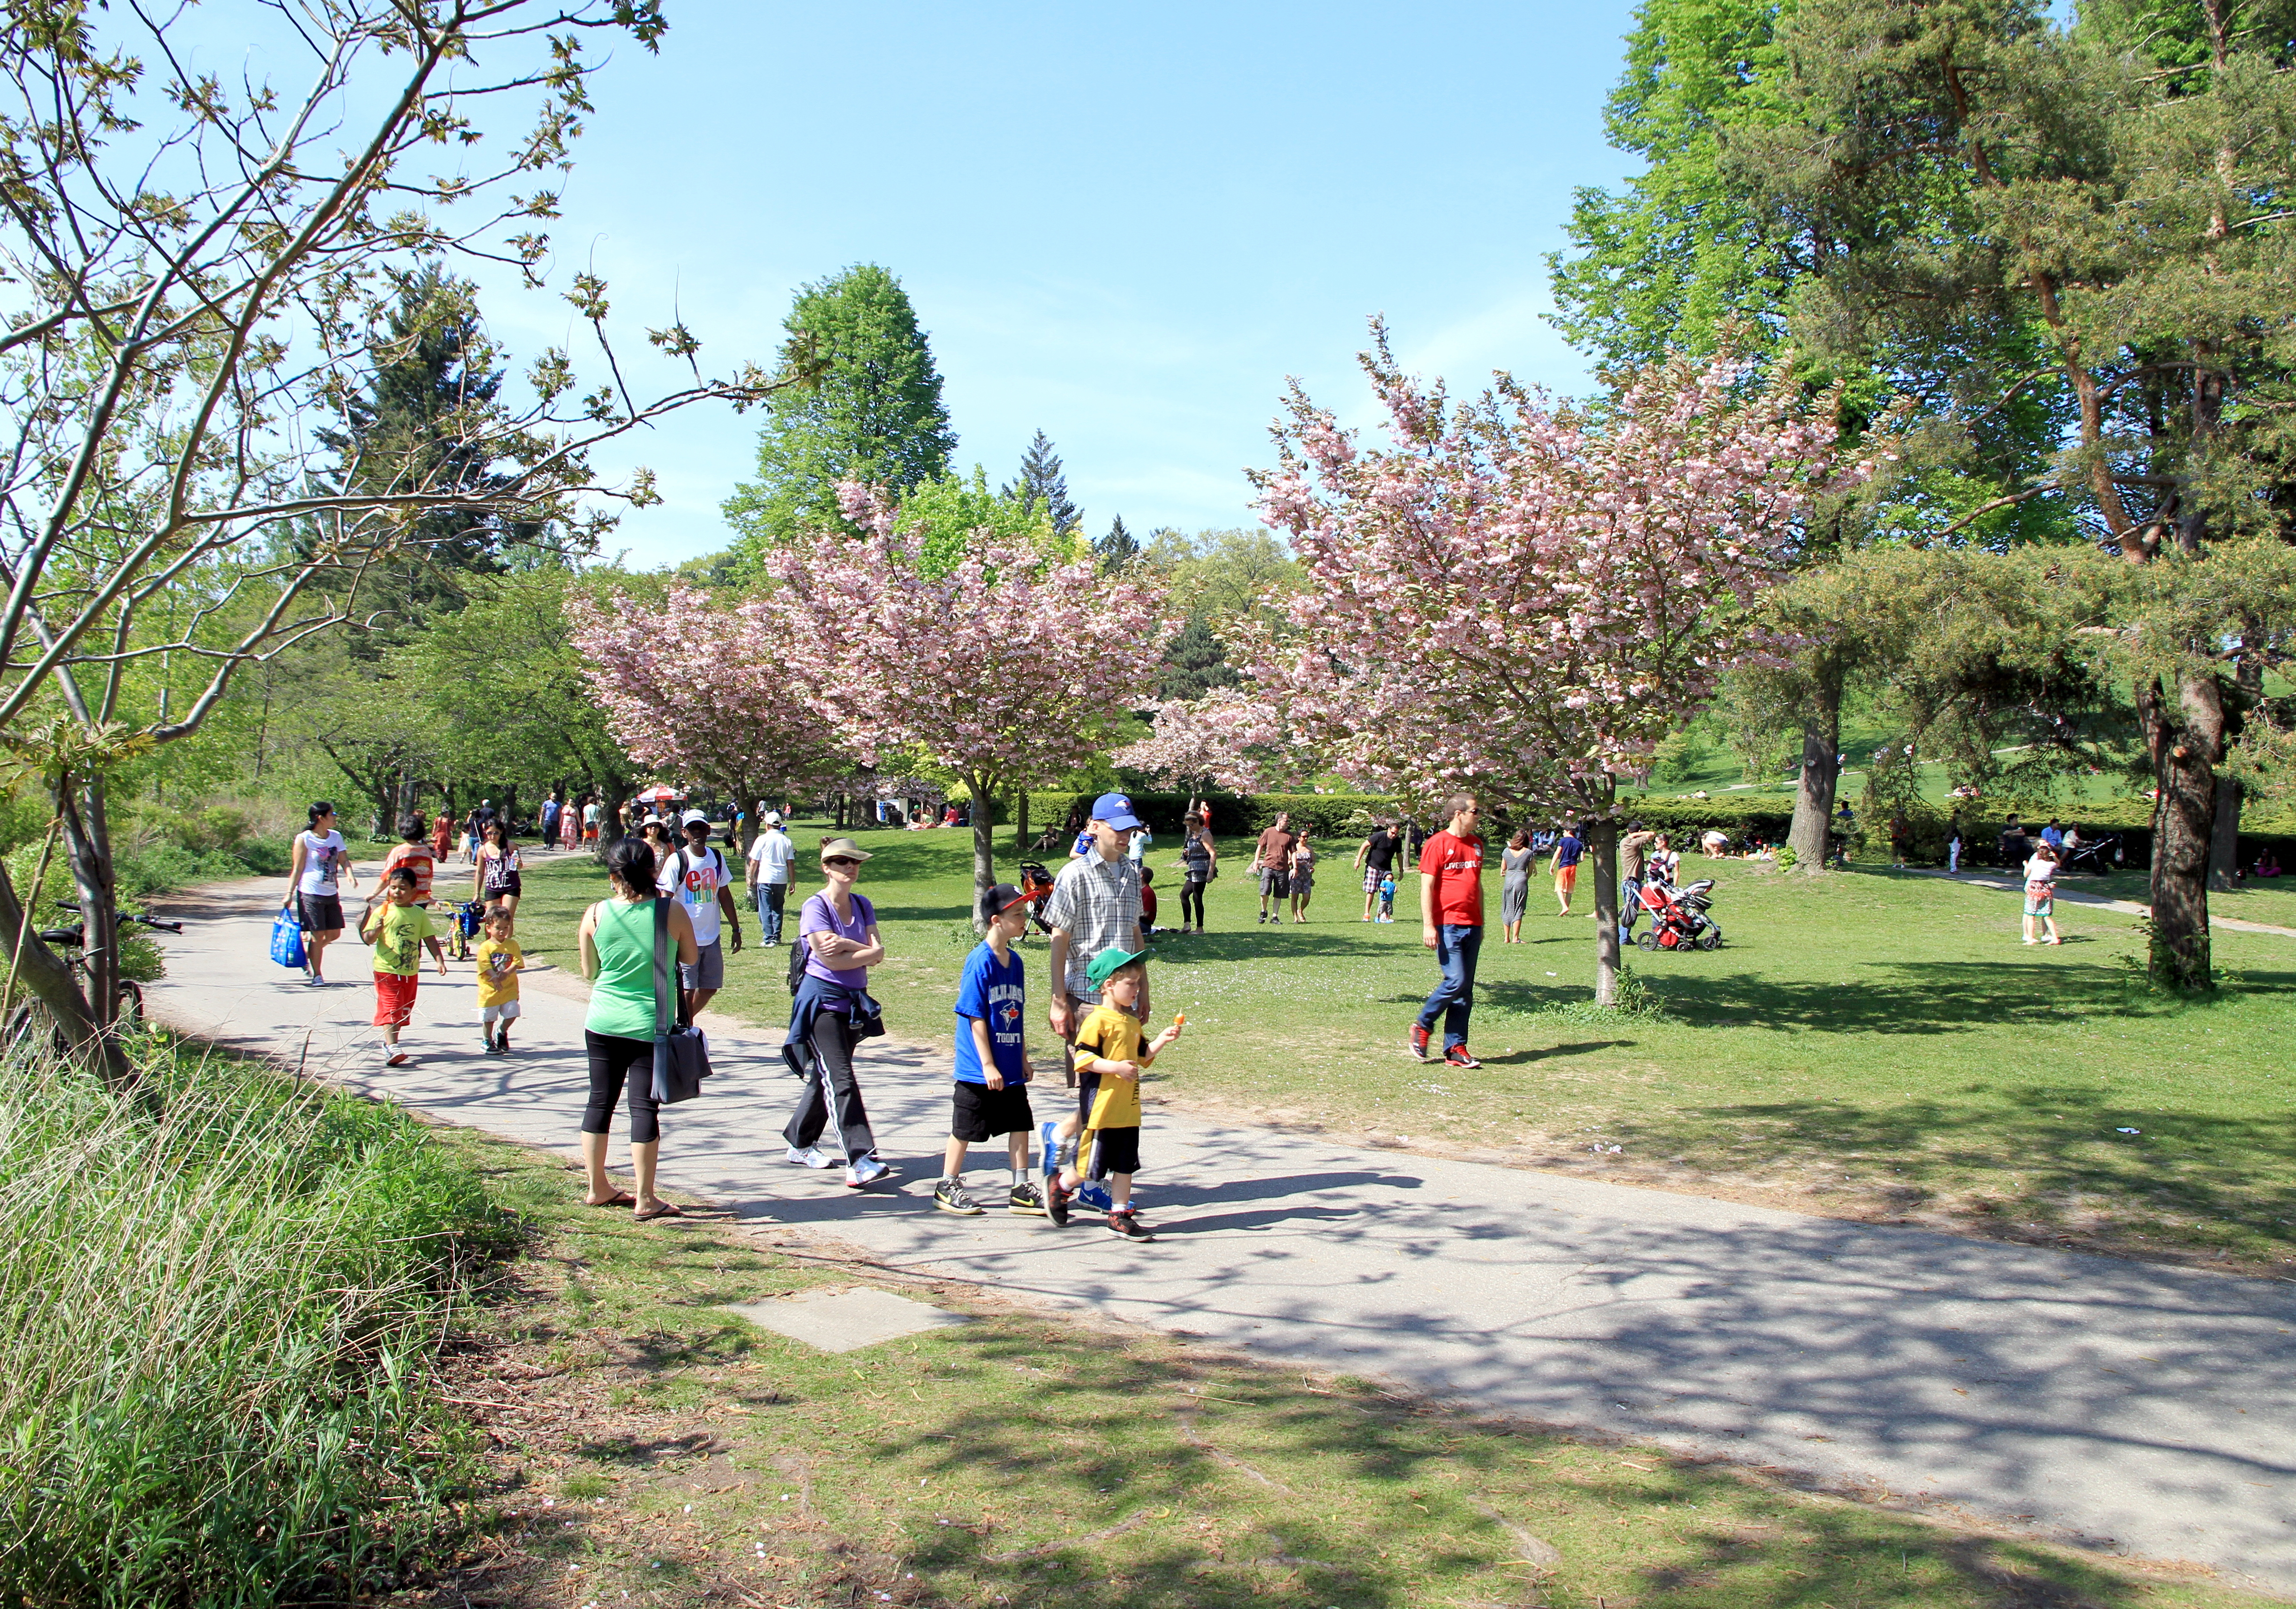 Diverses personnes marchent dans un parc